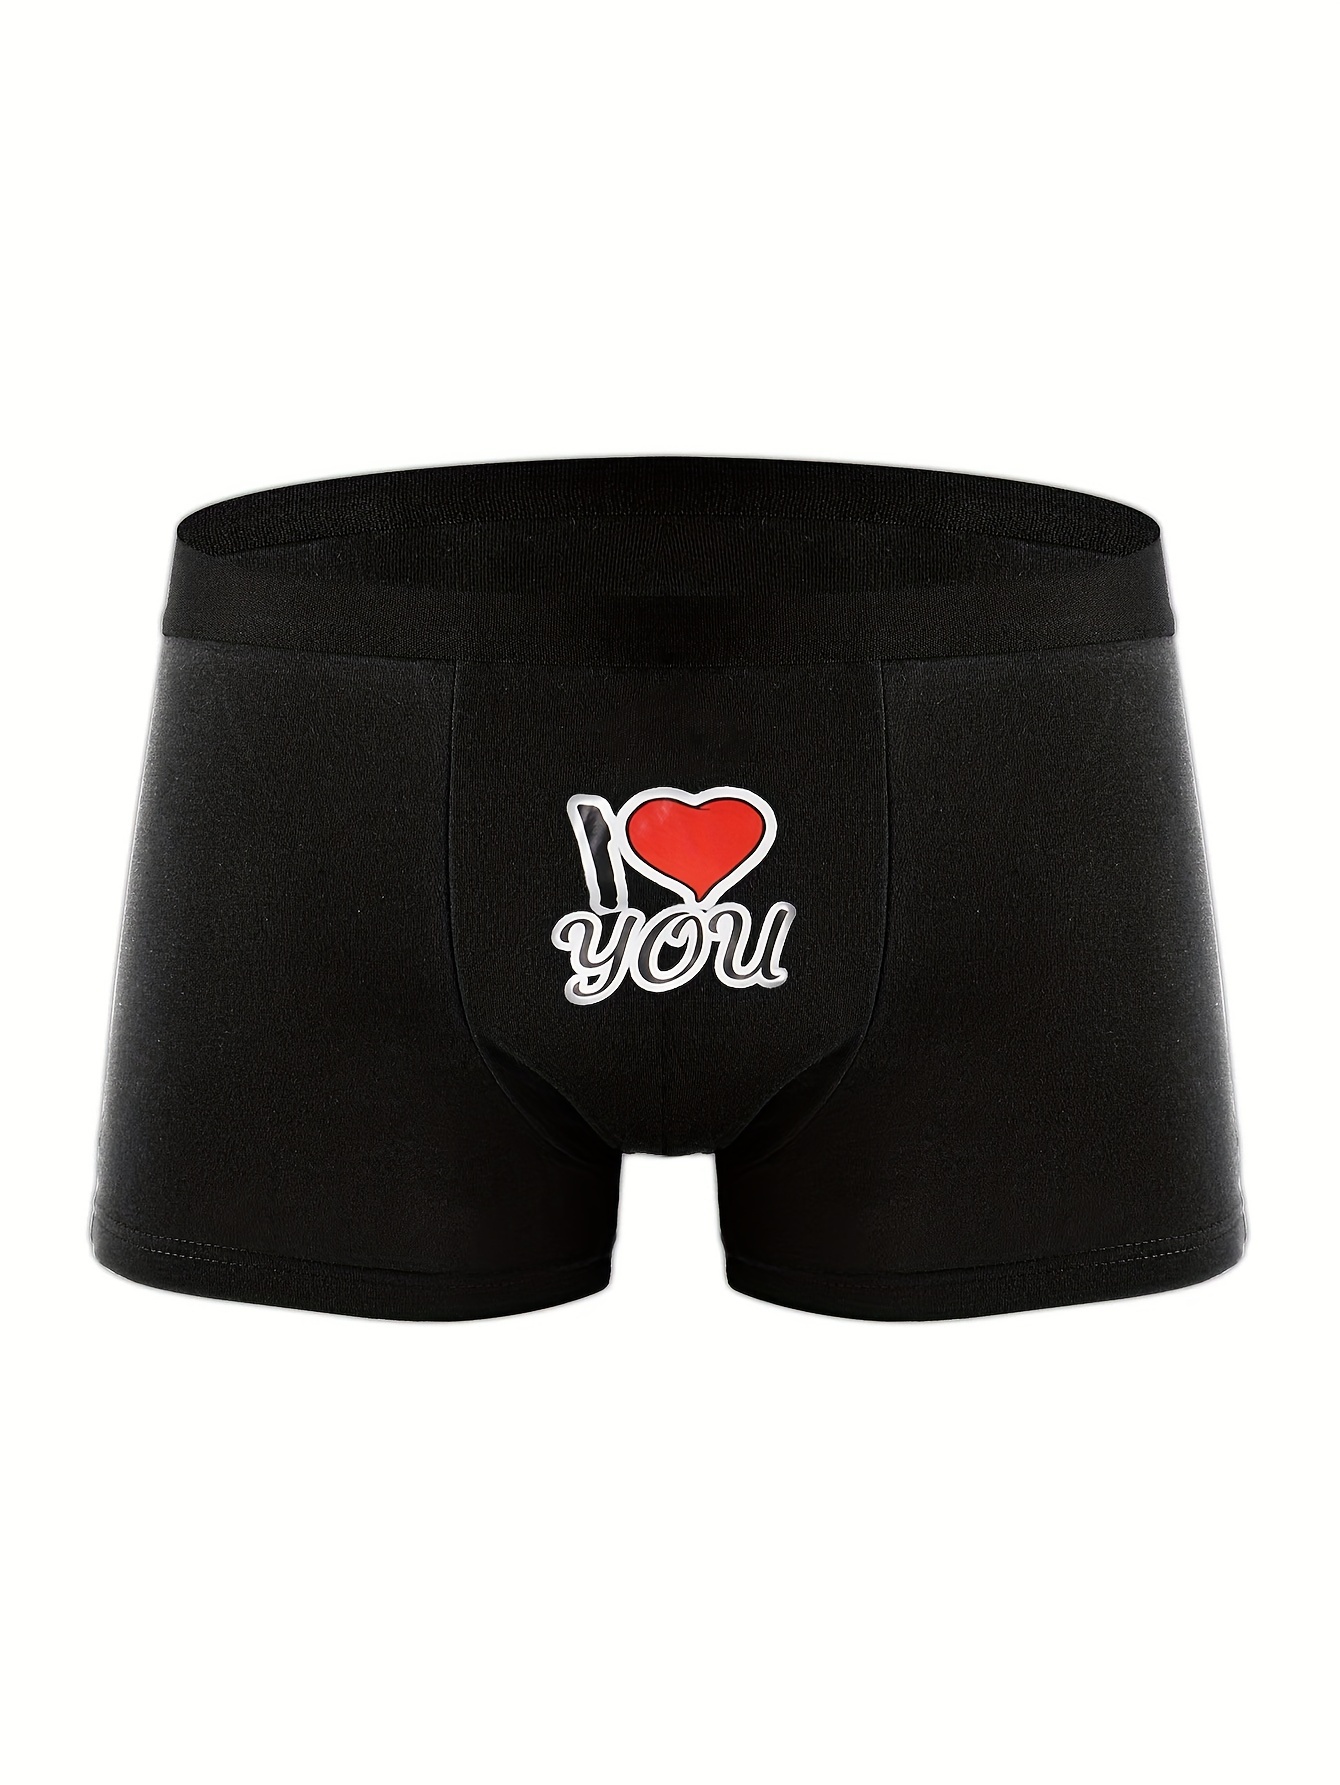 Couple Matching Underwear Men's Boxers Briefs Shorts Sexy - Temu Austria